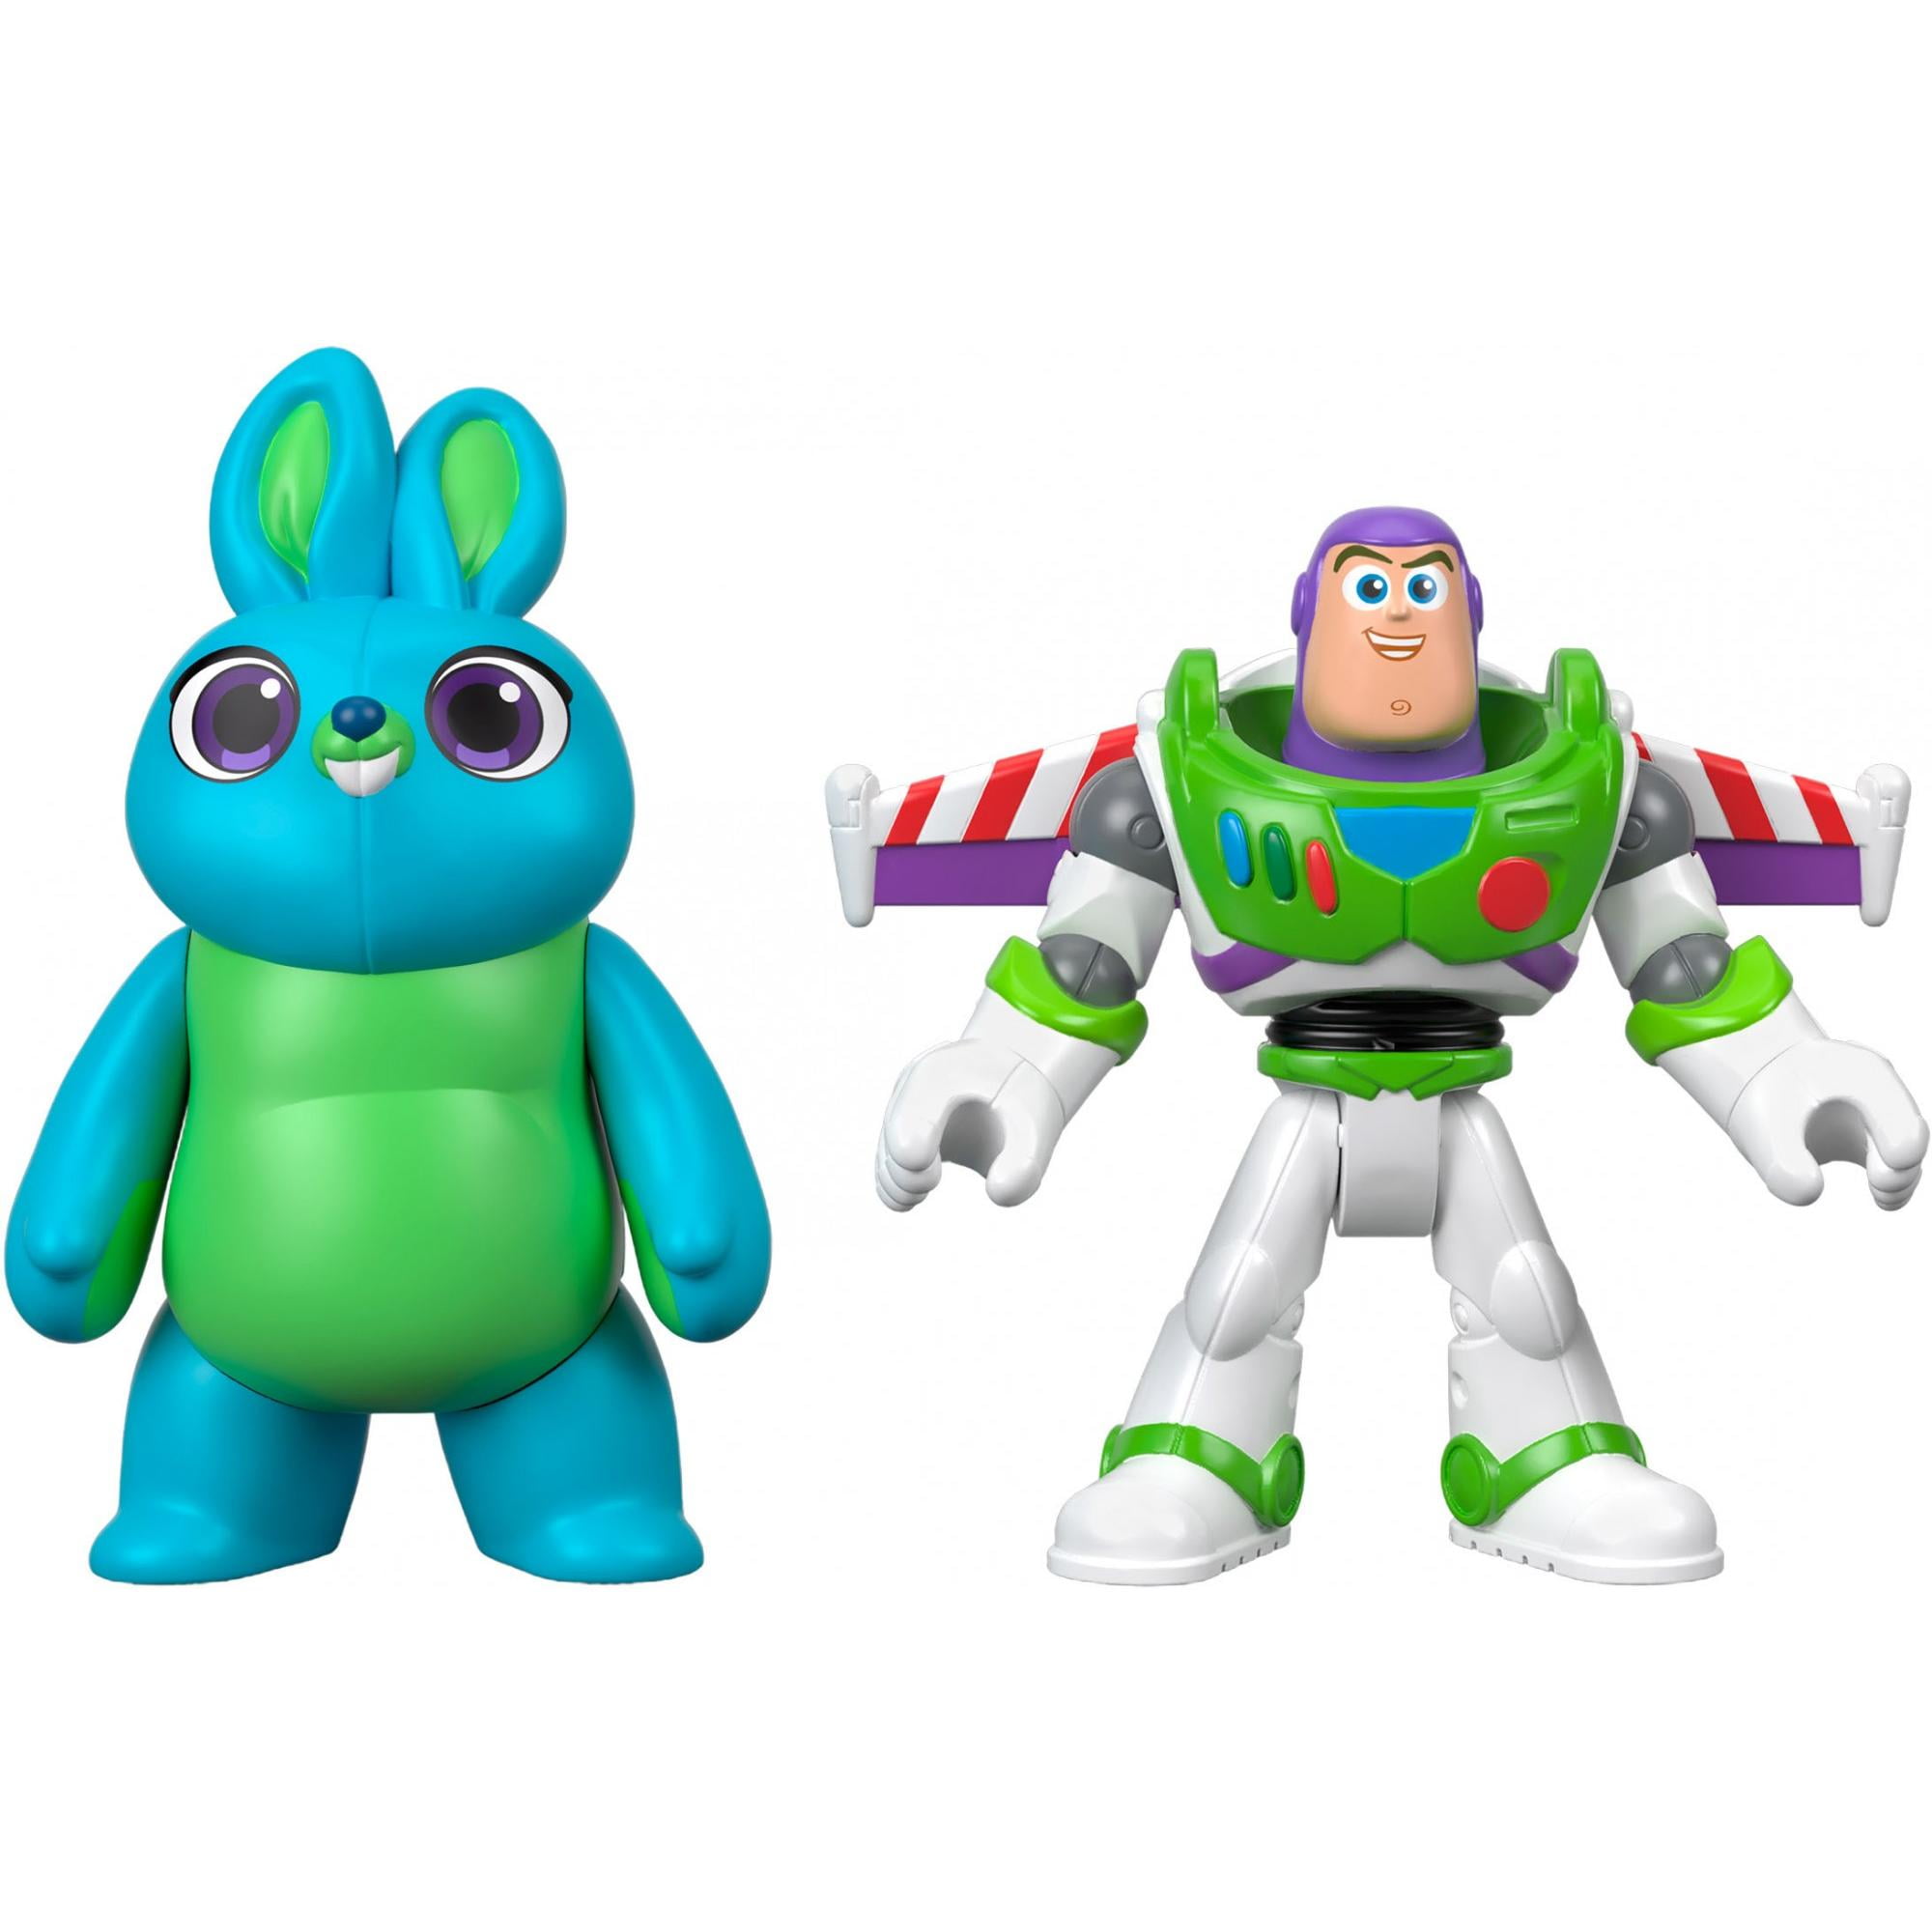 2018 Fisher Imaginext Disney Pixar Toy Story Buzz Lightyear & Jessie for sale online 